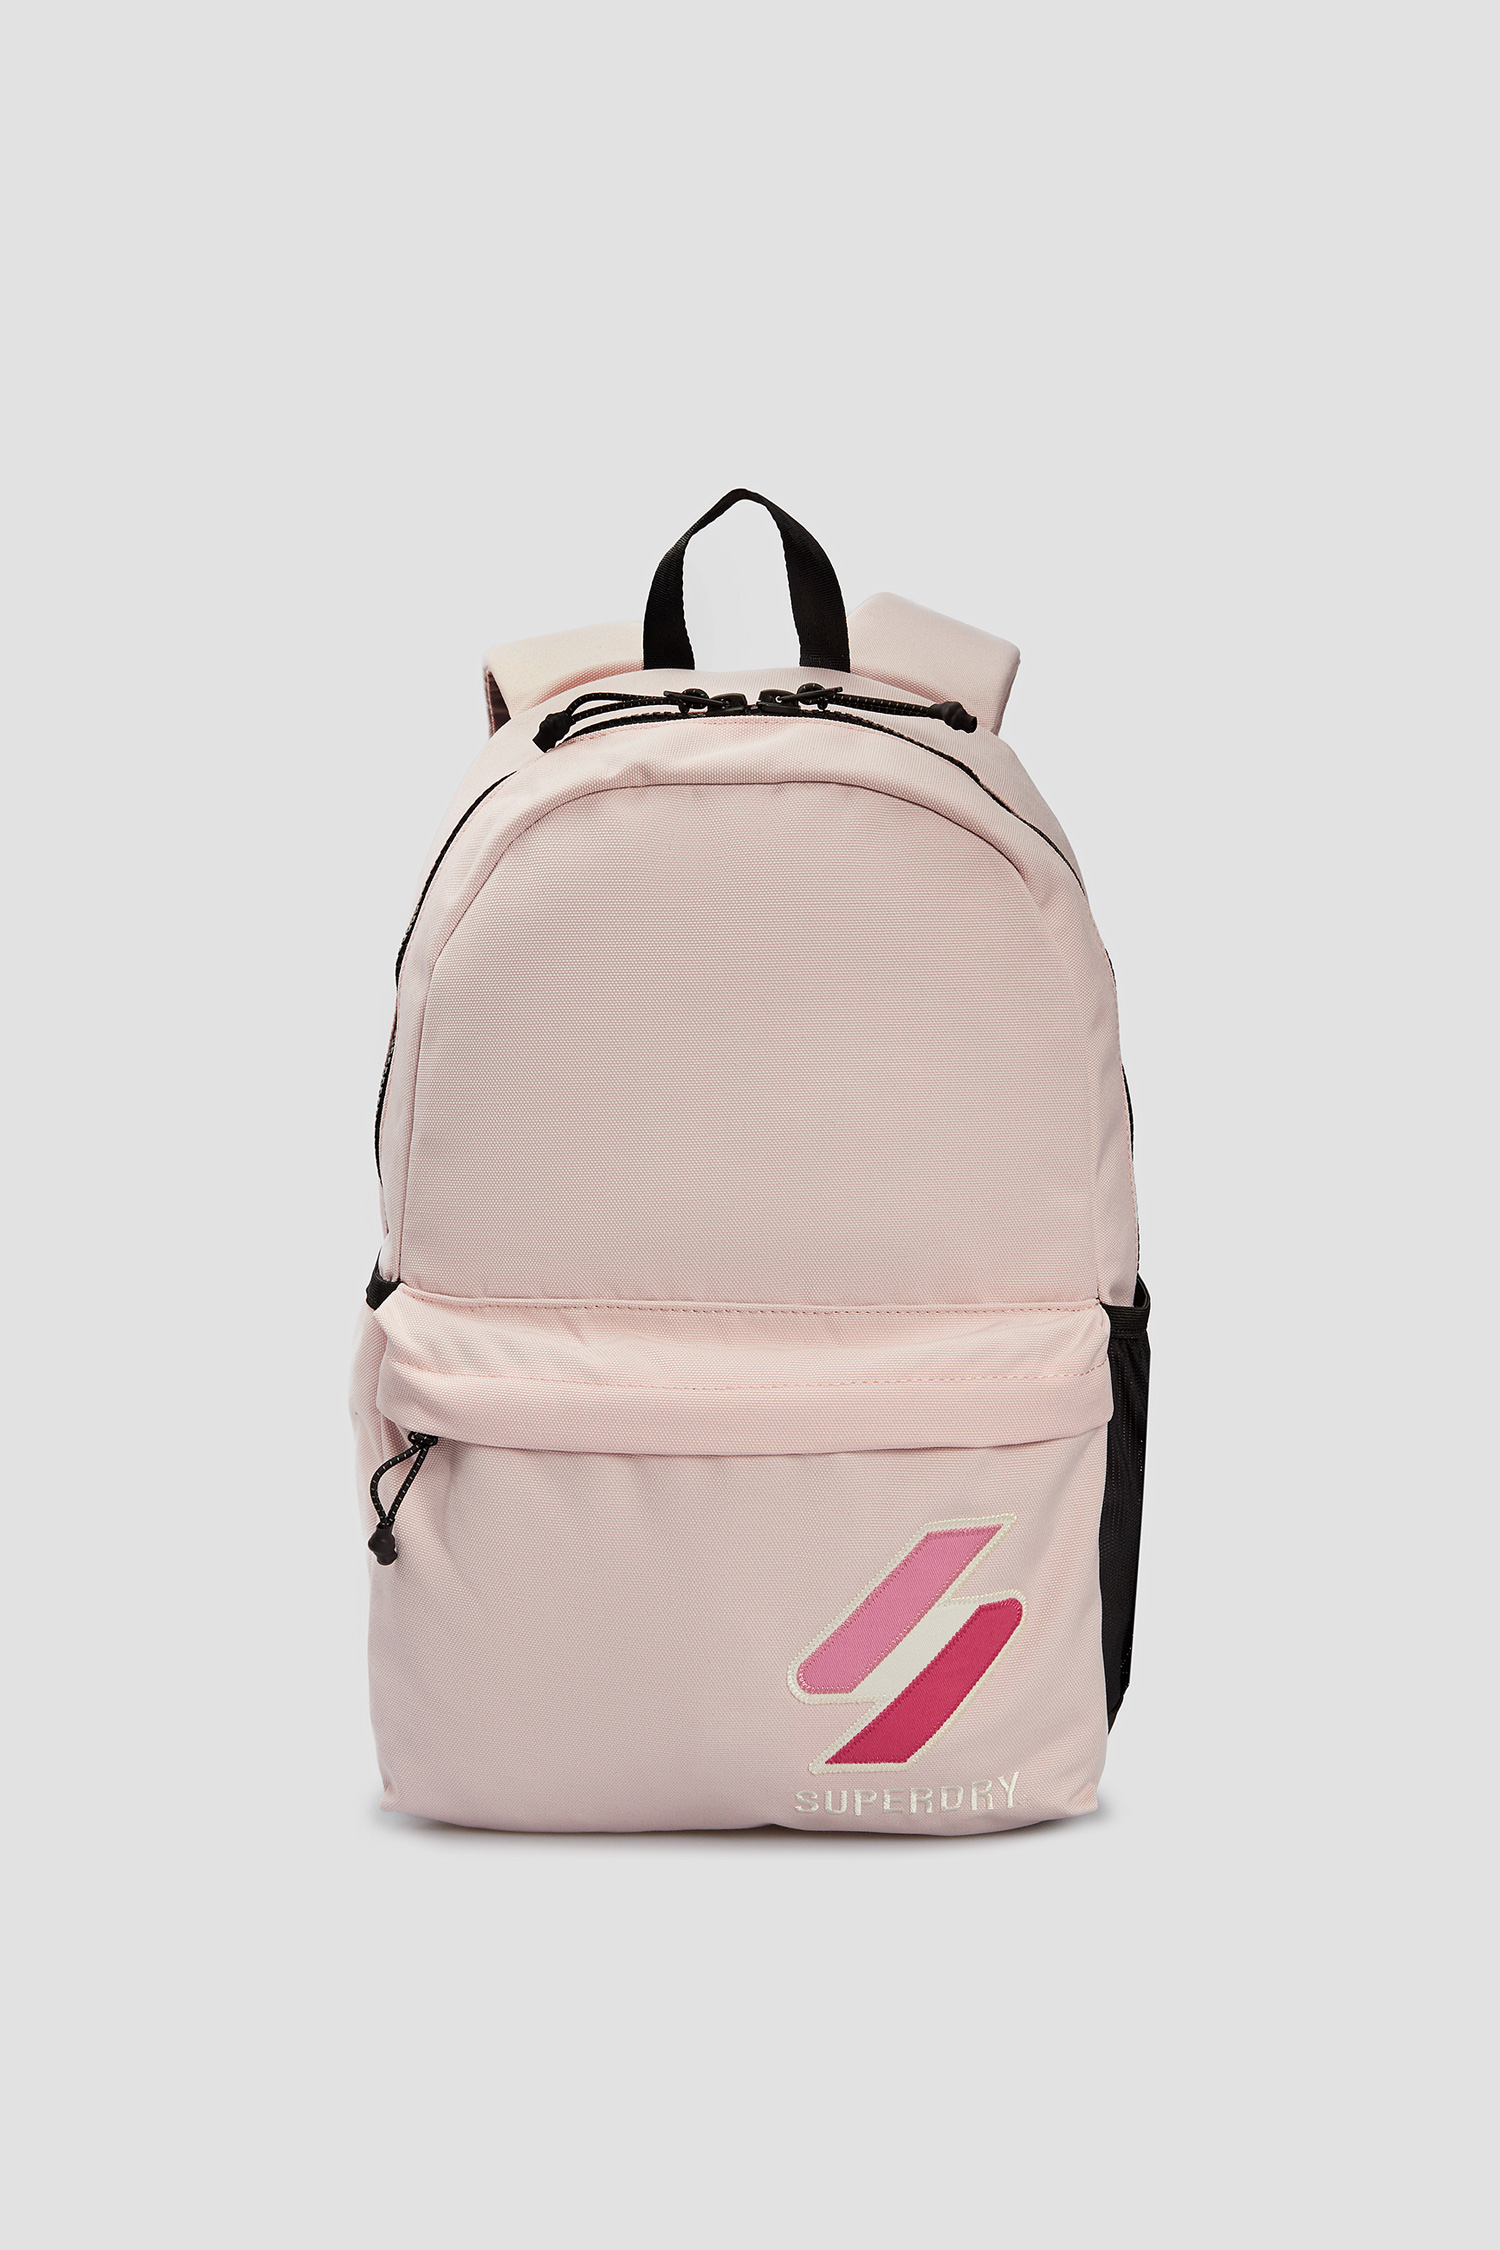 Чоловічий рожевий рюкзак SuperDry M9110532A;5YA